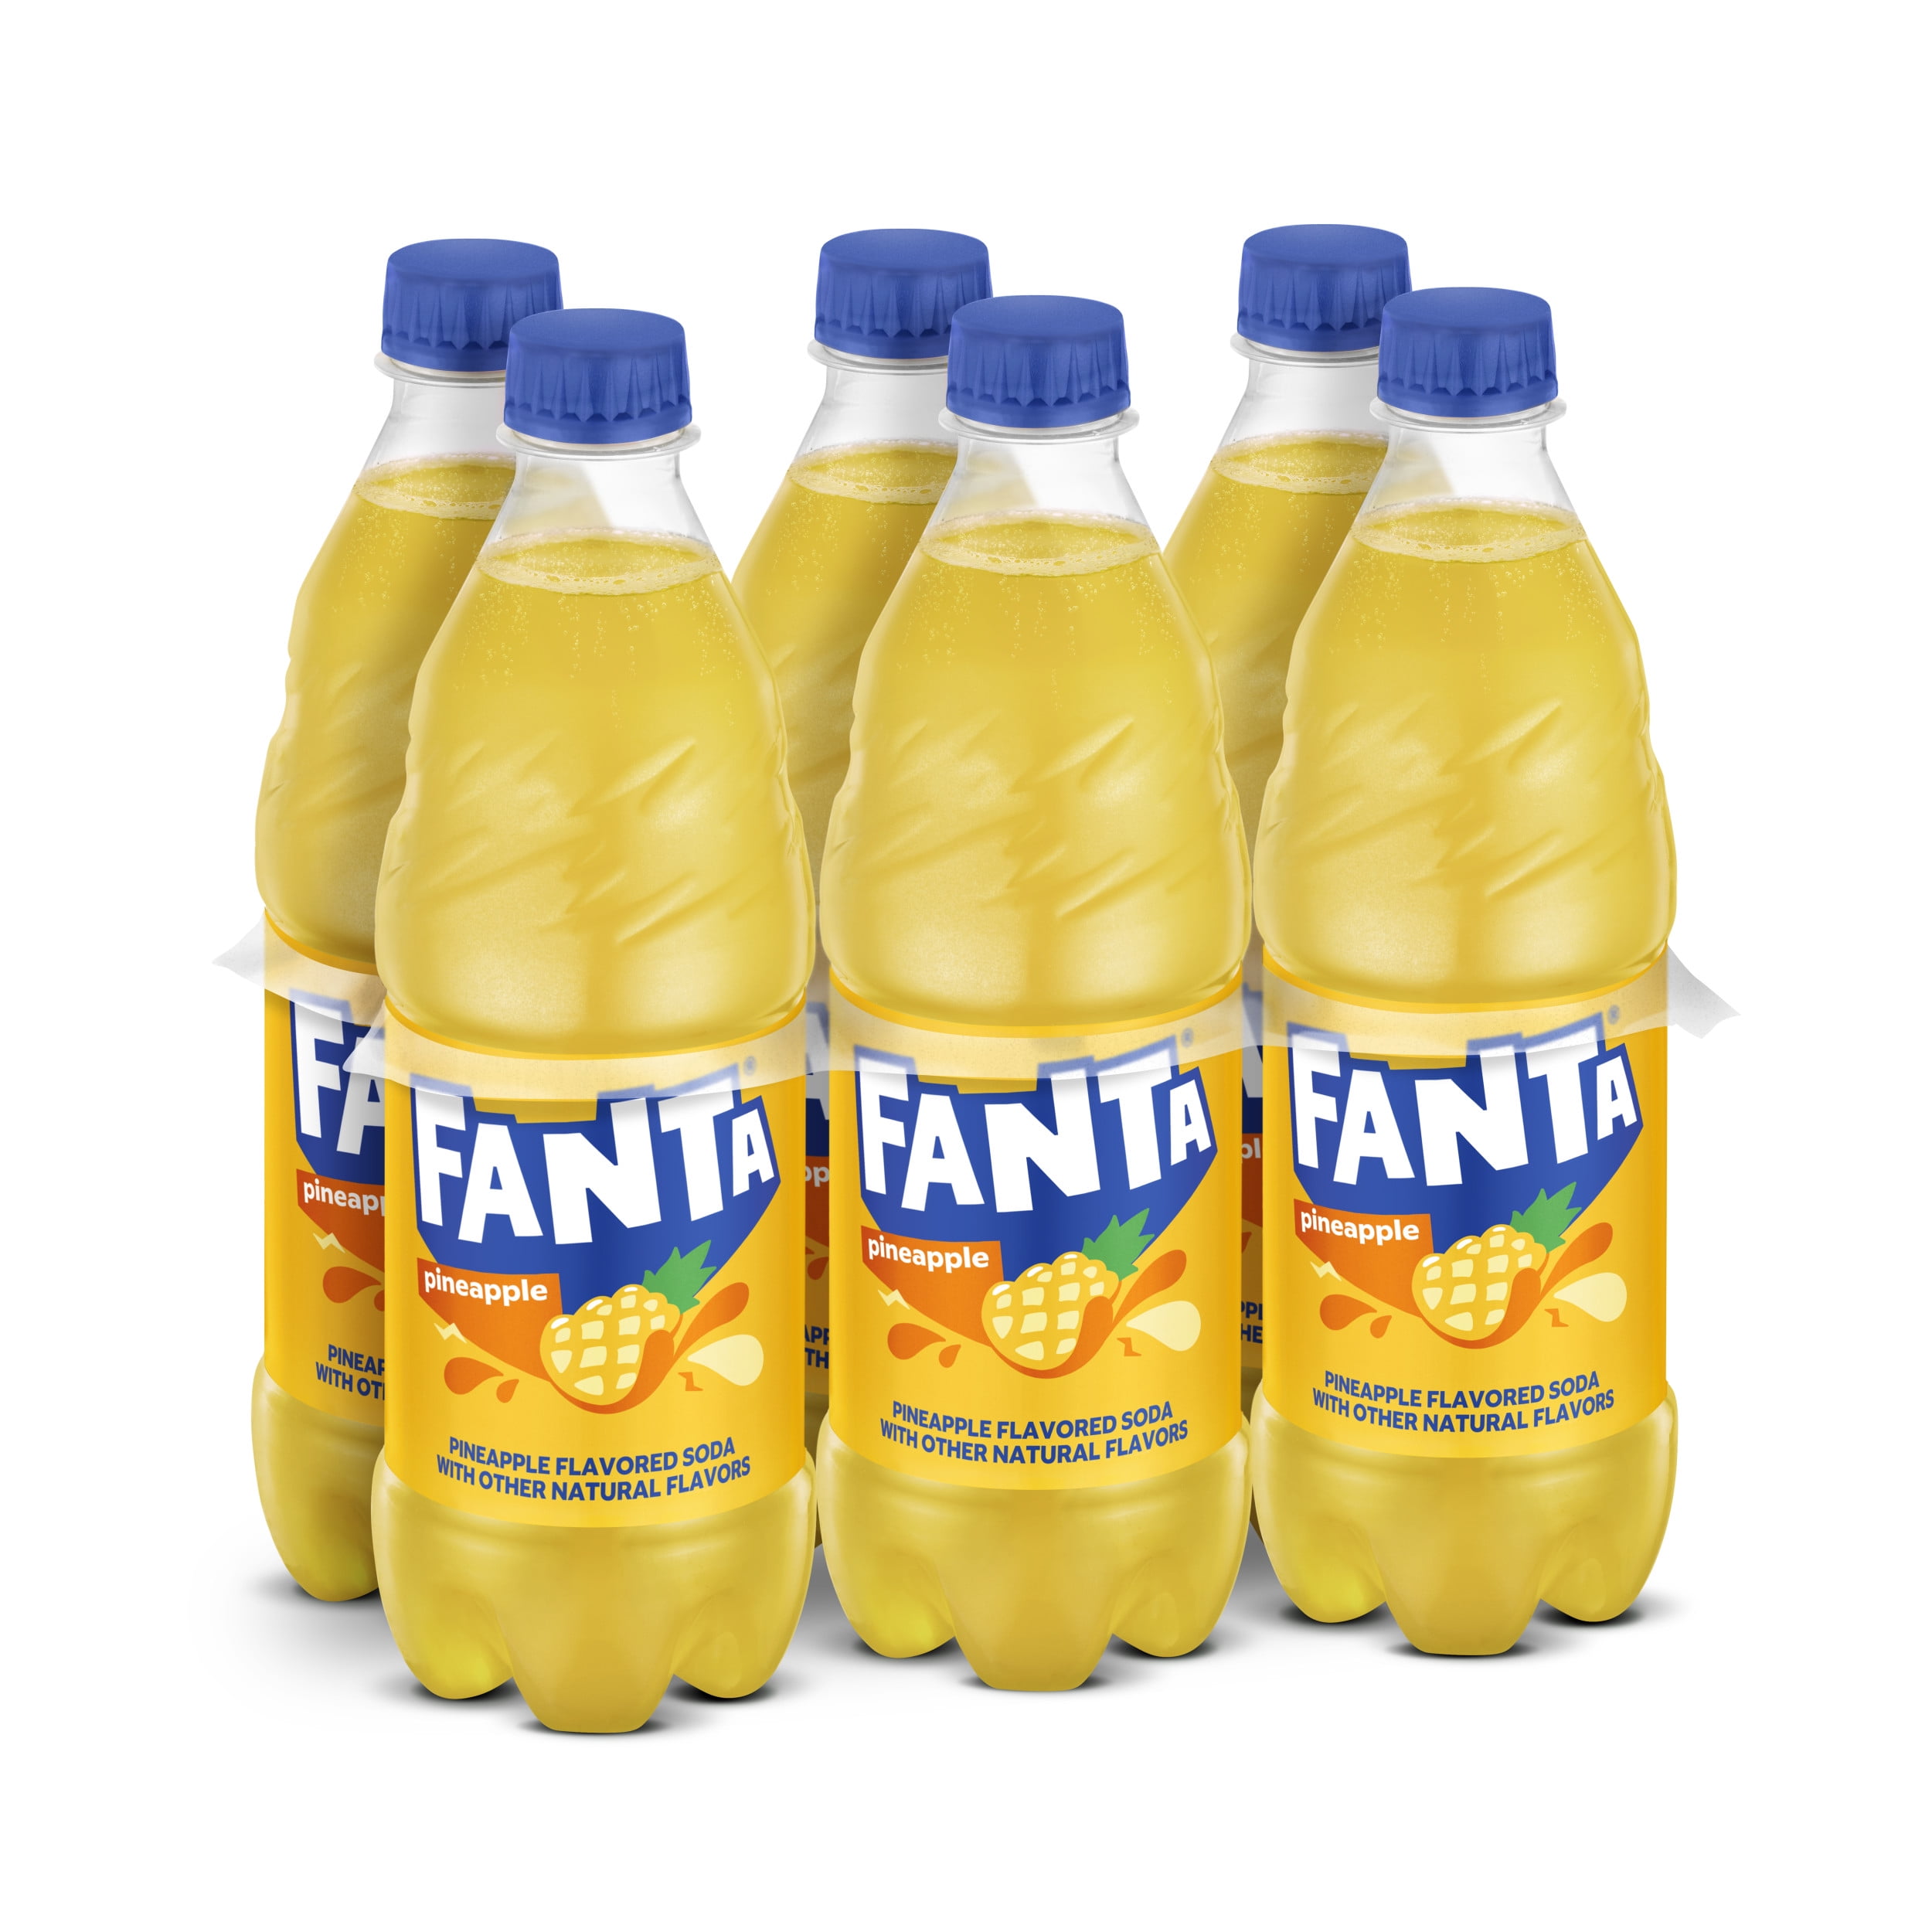 Fanta Pineapple Fruit Soda Pop, 16.9 fl oz, 6 Pack Bottles - Walmart.com